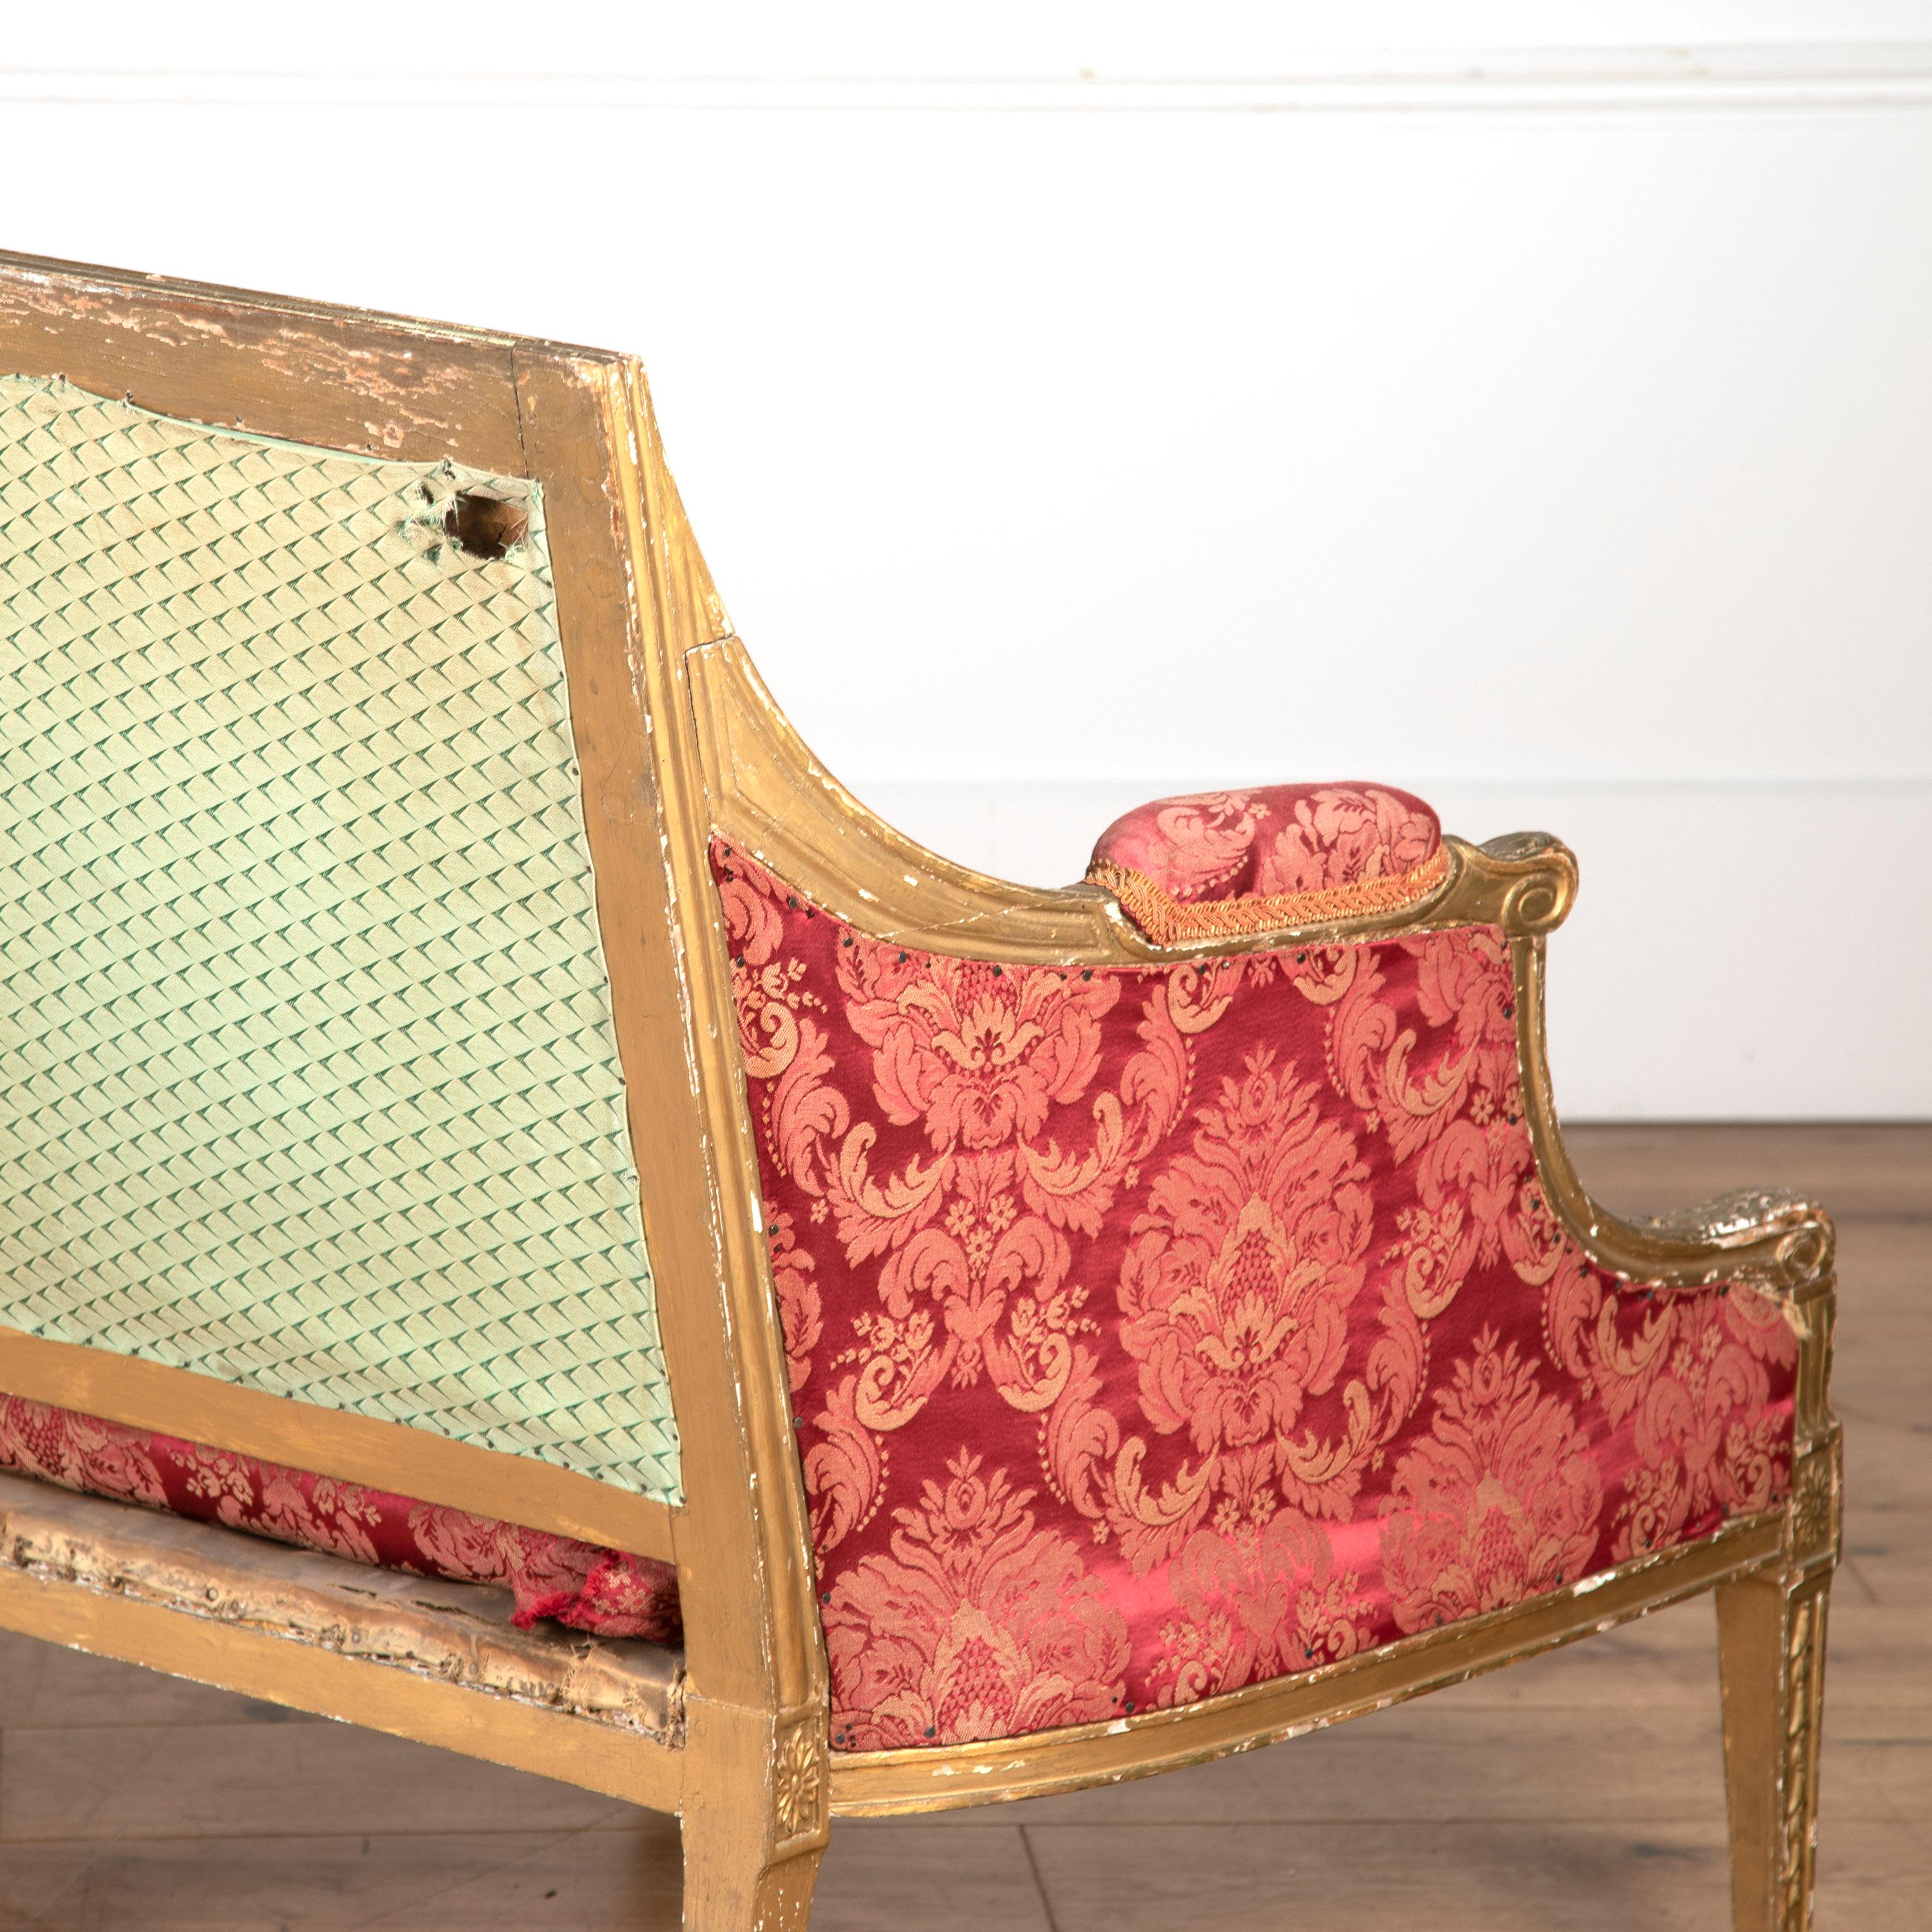 Grand canapé en bois doré de George III à la manière de James Wyatt.

Ce canapé est doté d'un cadre détaillé comprenant des clochettes et des rosettes sculptées. 

L'ensemble repose sur de magnifiques pieds fuselés qui soutiennent son coussin en